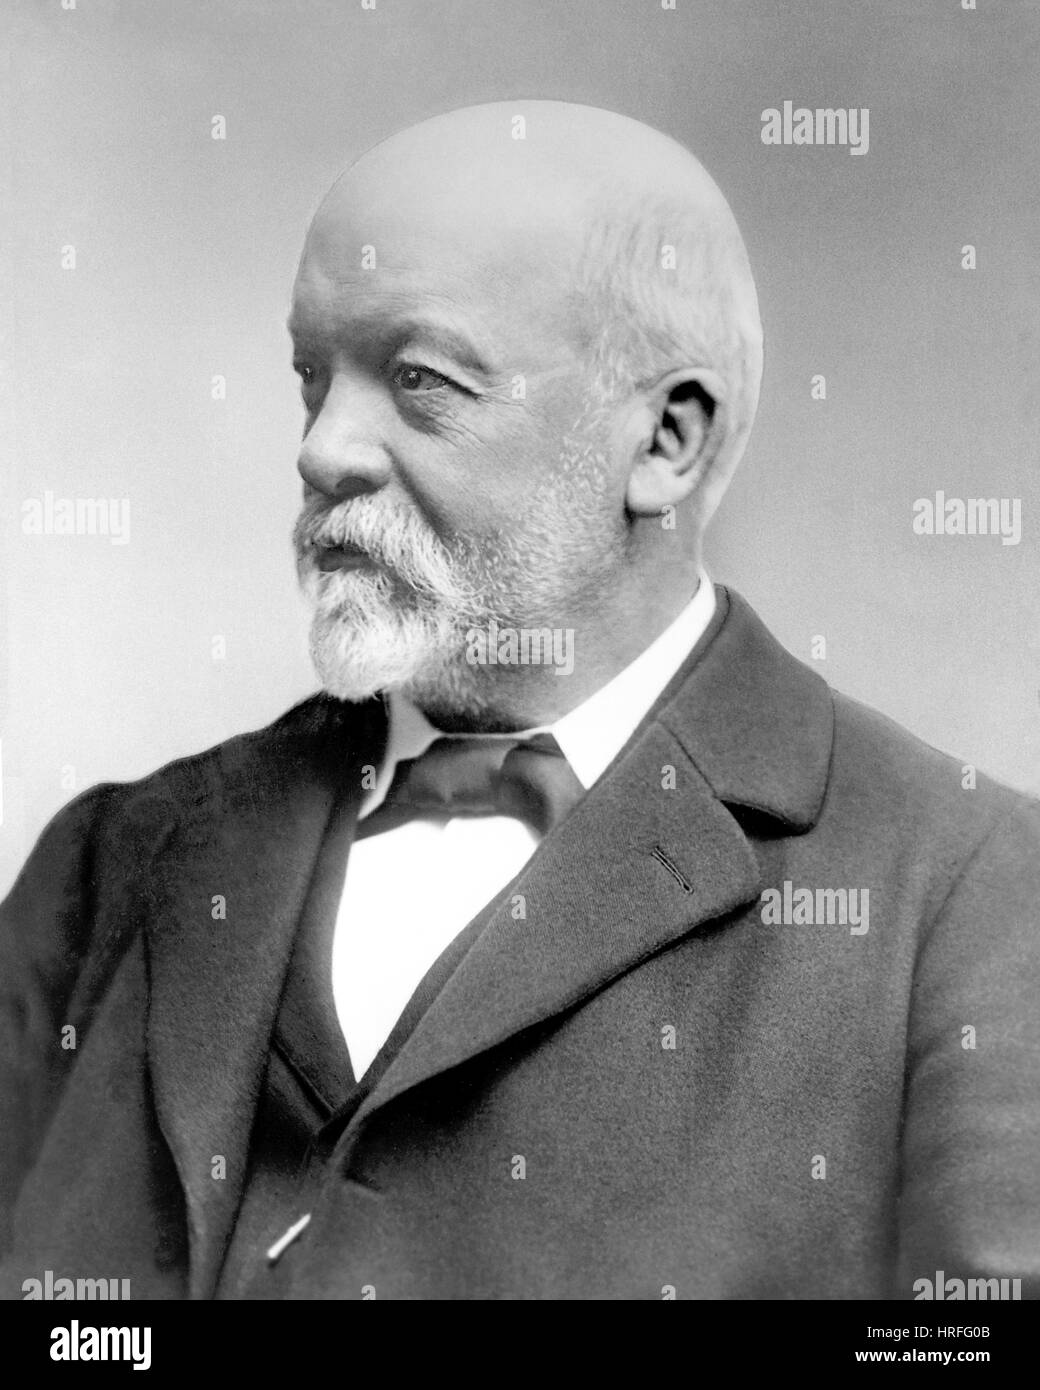 GOTTLIEB DAIMLER (1834-1900) ingénieur allemand qui a été le premier moteur à combustion interne. Photo vers 1895 Banque D'Images